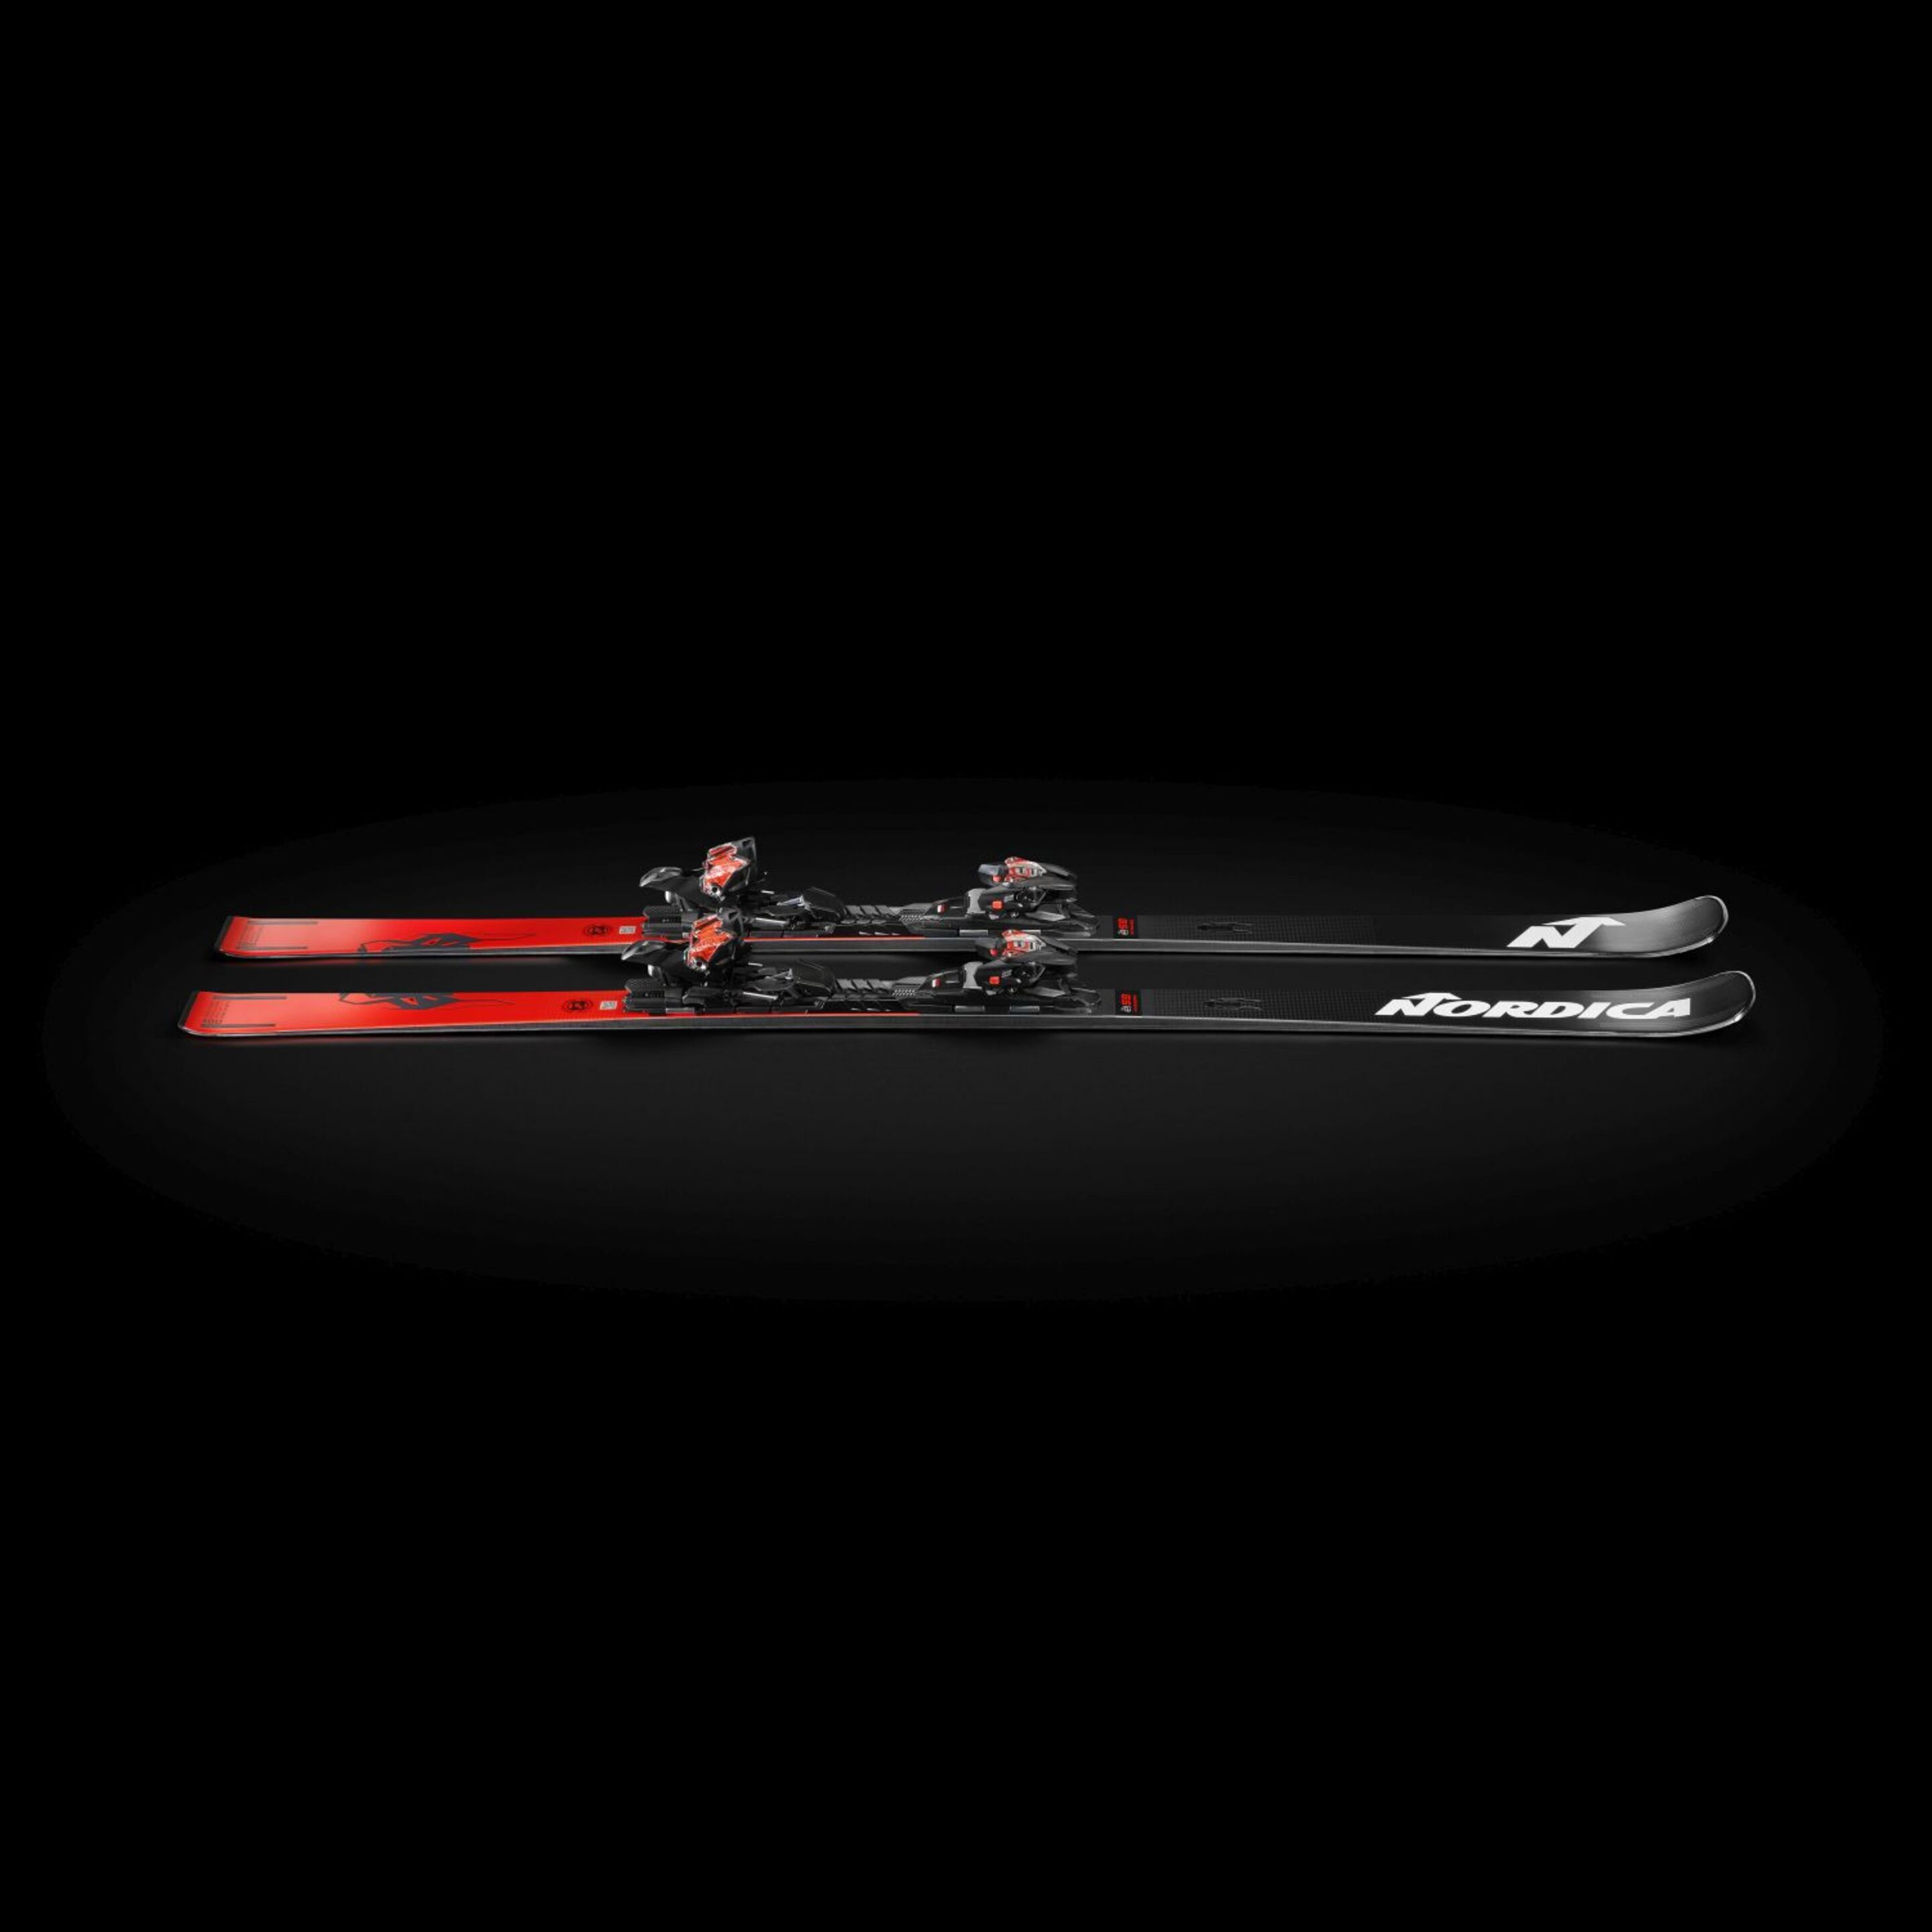 Esquí Con Fijación Adulto Nordica Doberman Gsr Rb+xcell14 Fdt - Negro/Rojo  MKP